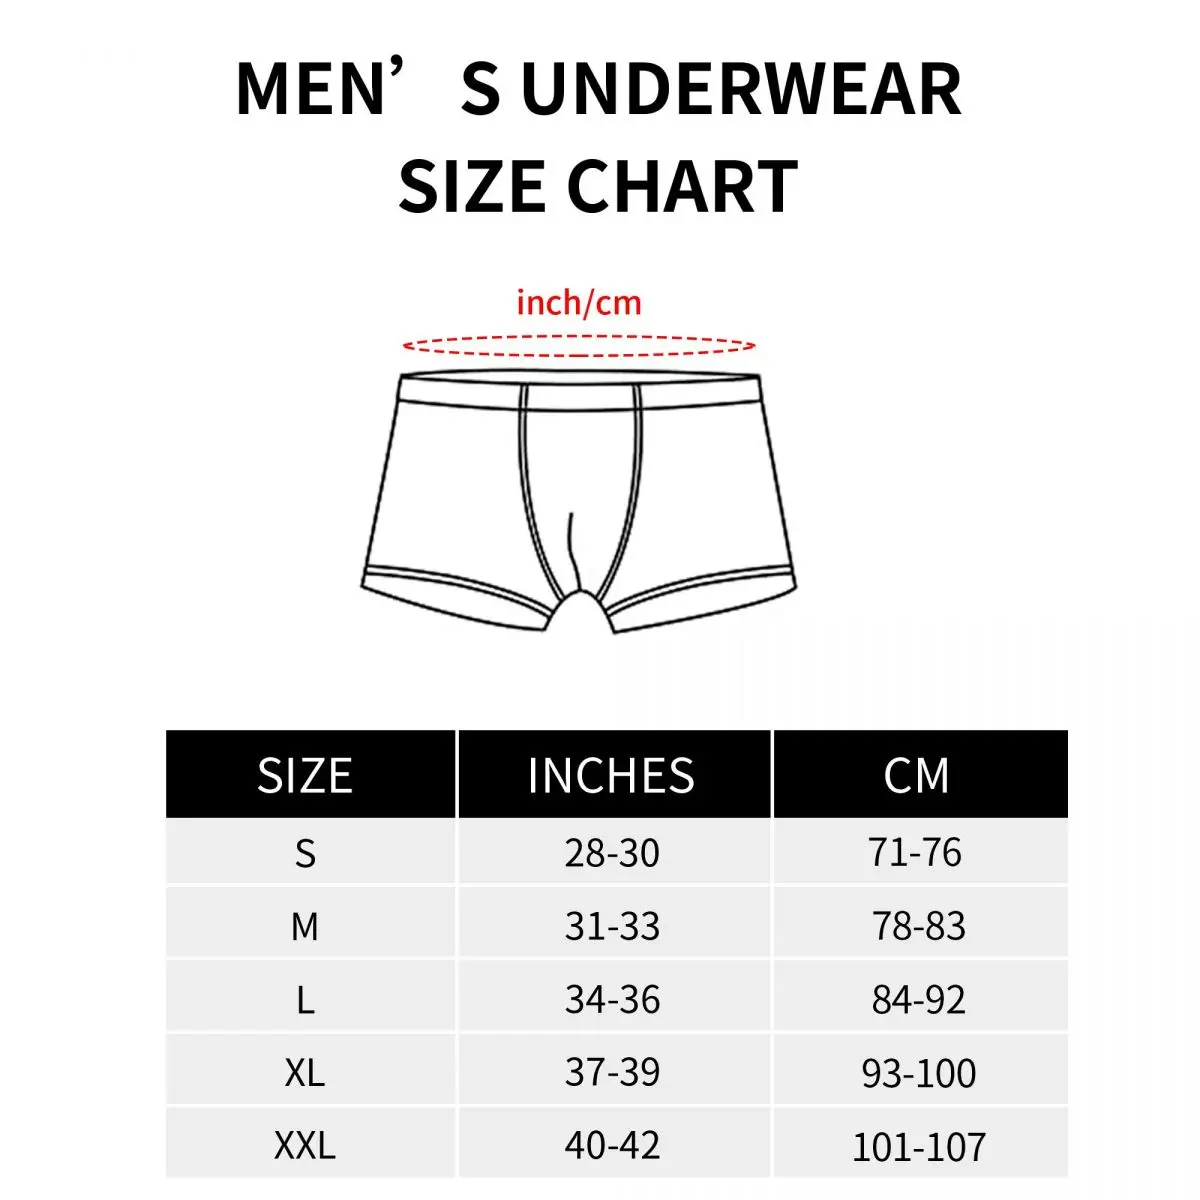 Мужские трусы-боксеры Science Math цвета индиго, дышащее нижнее белье Homme Hot S-XXL Underpants